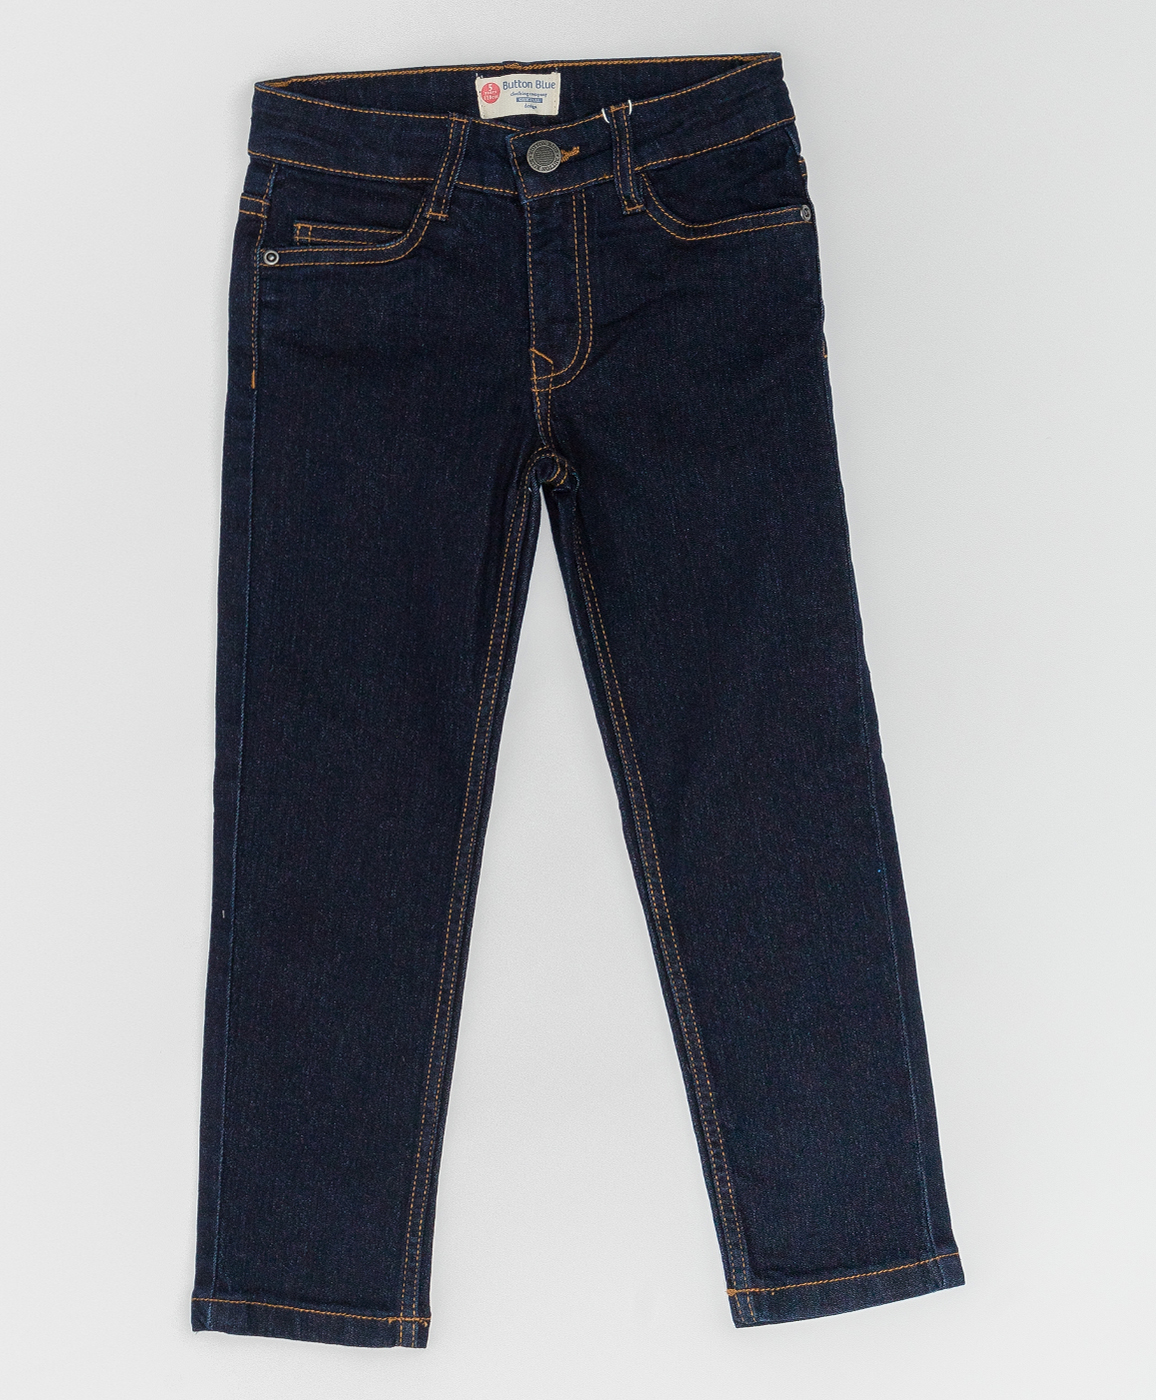 Синие джинсы Button Blue 220BBBMC6303D500, размер 110, цвет синий regular fit / прямые - фото 1